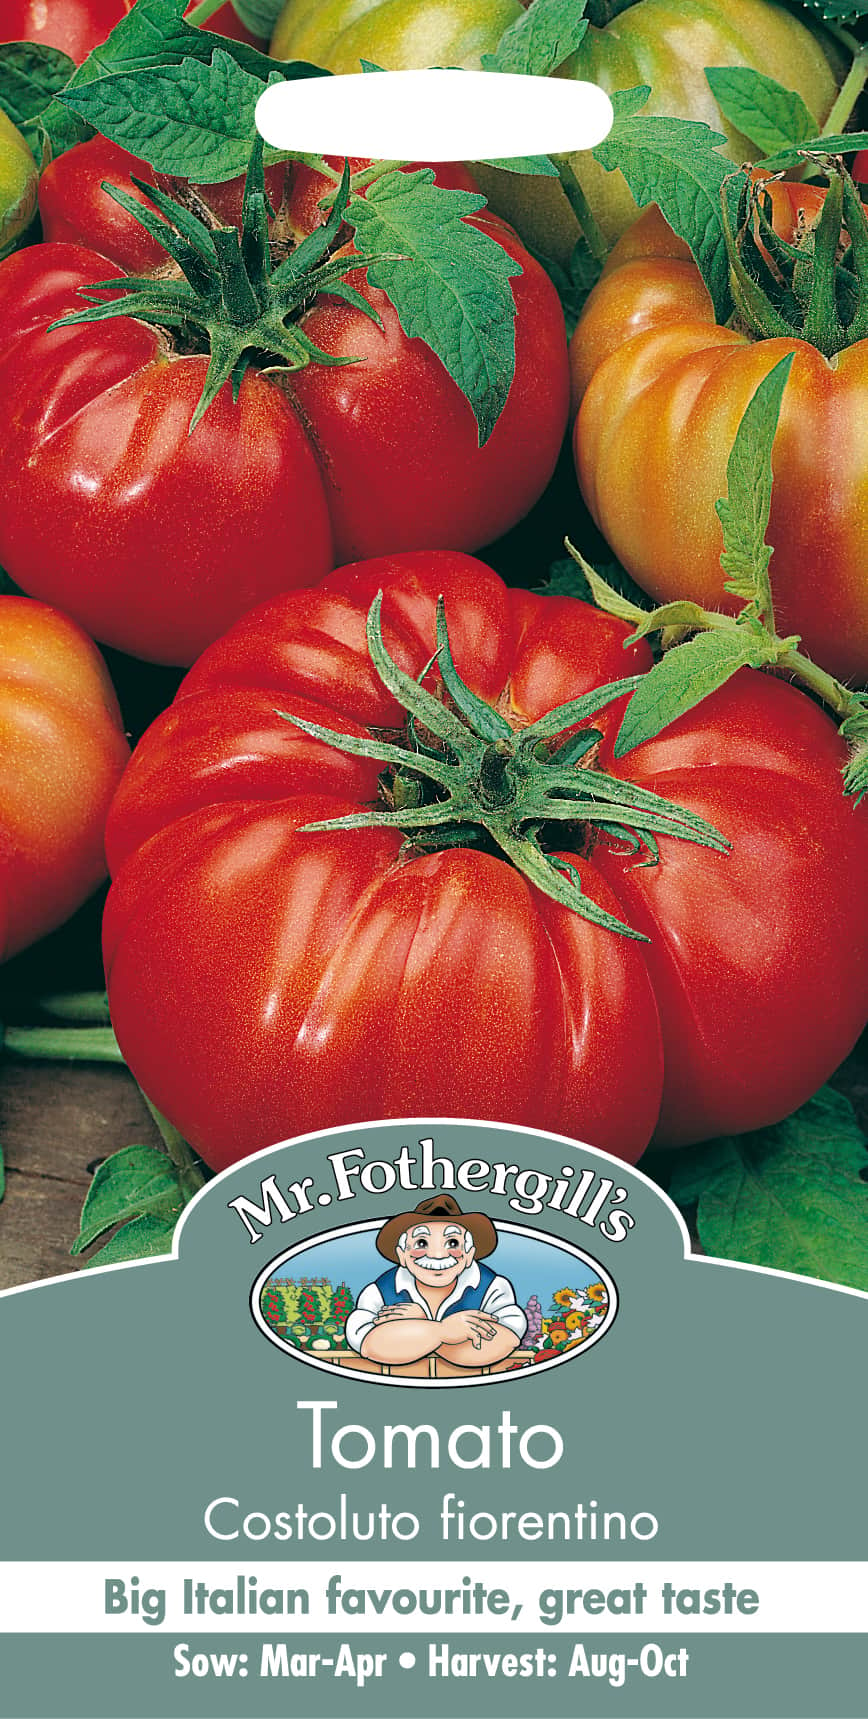 biff--tomat-costoluto-fiorentino-1